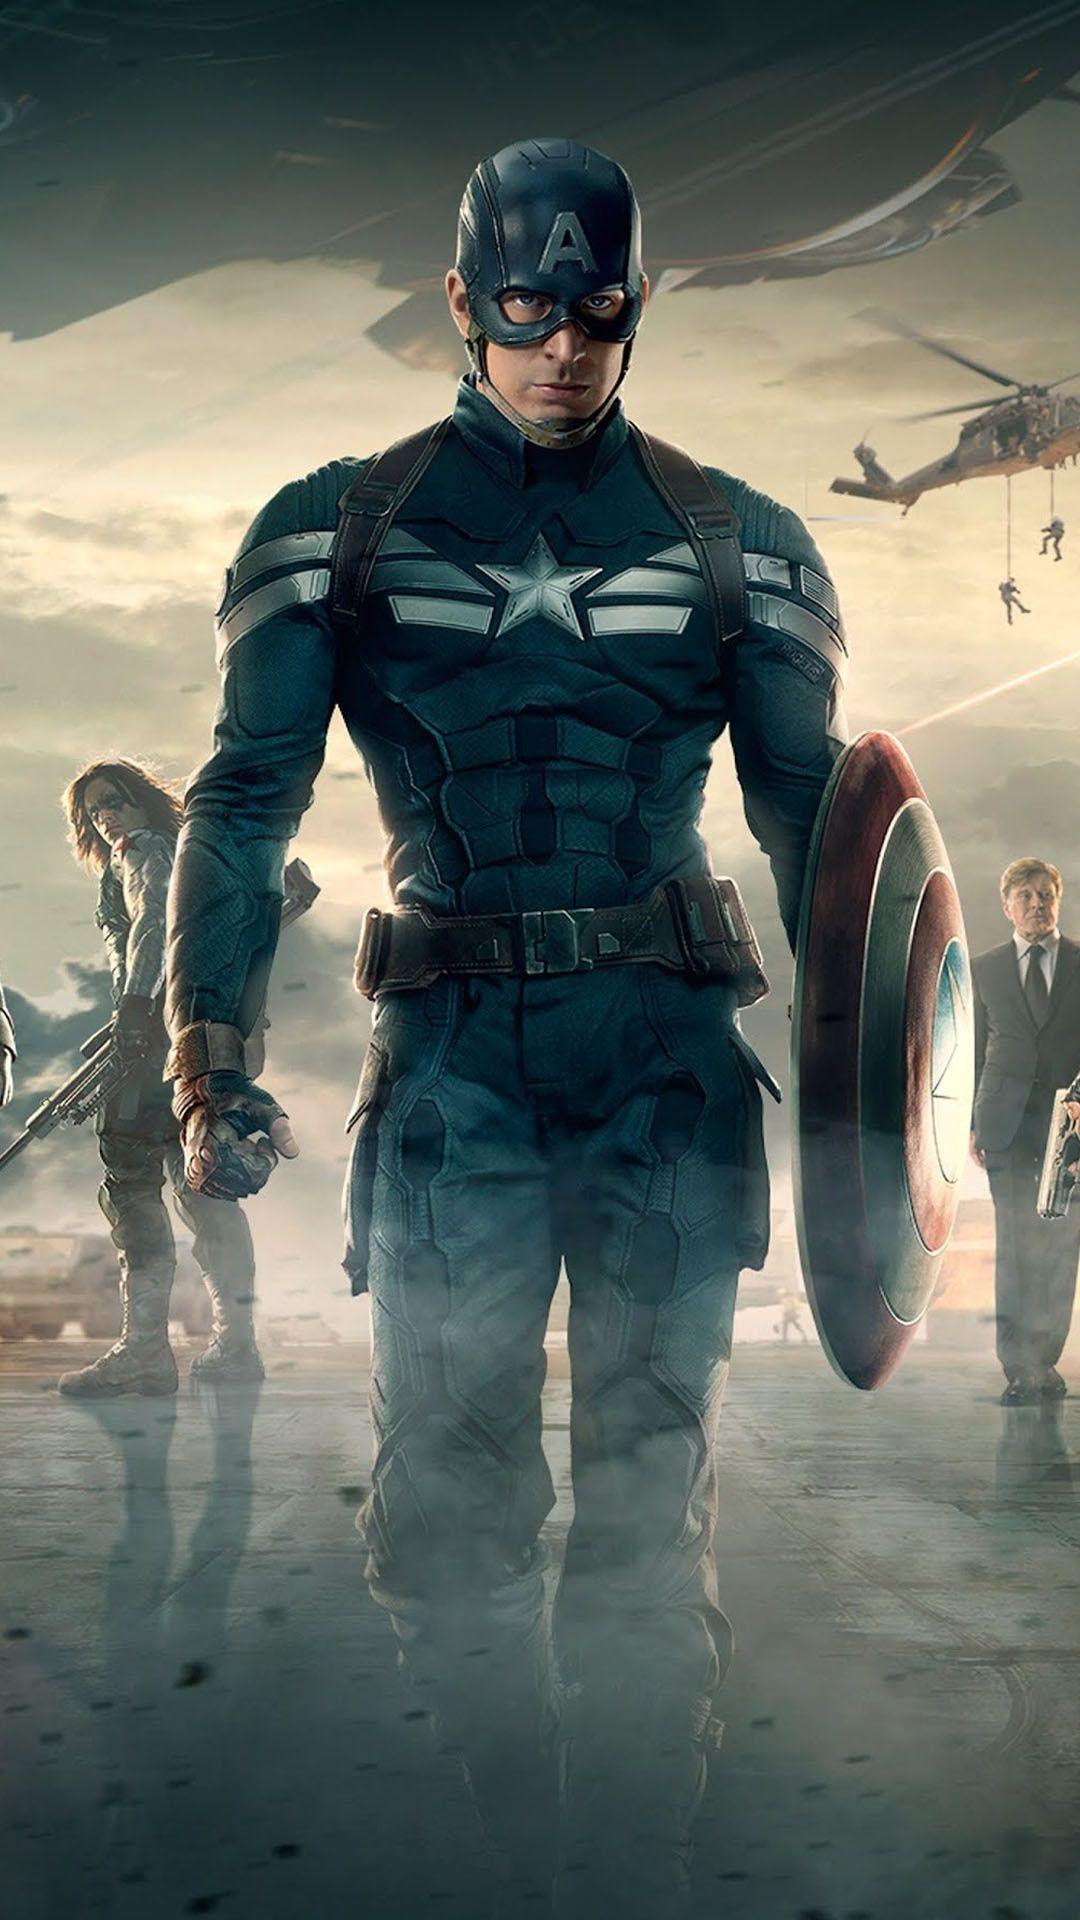 Tải xuống miễn phí Hình nền Android 1080x1920 Captain America 2 The Winter Soldier